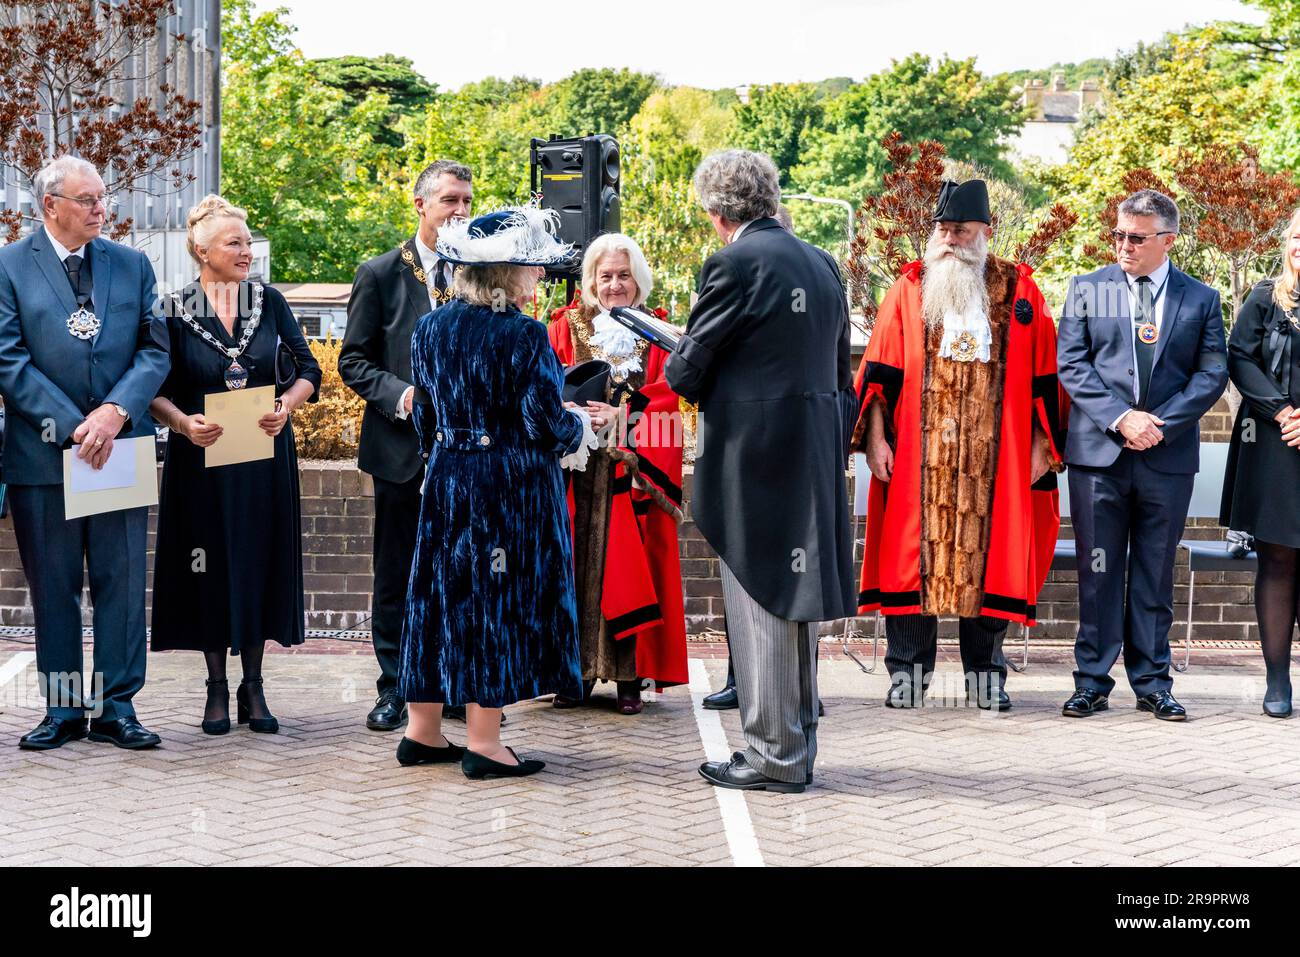 Die Proklamationszeremonie für König Karl III. Nach dem Tod von Königin Elizabeth II., County halll, Lewes, East Sussex, Großbritannien. Stockfoto